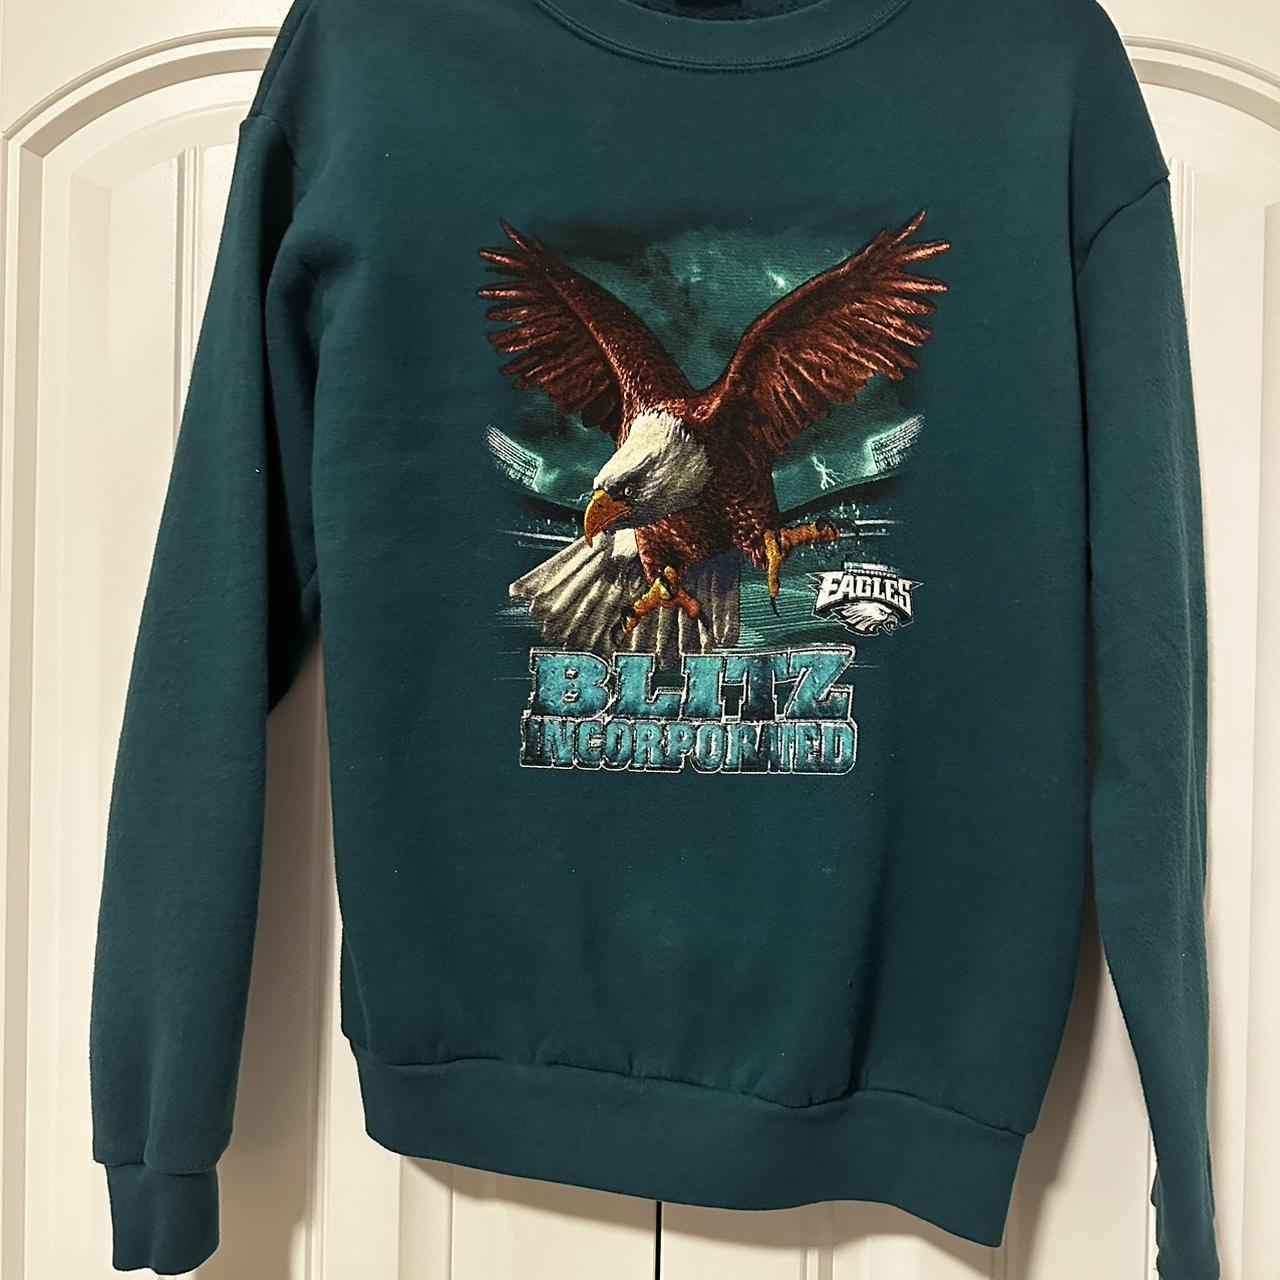 Eagle Sweatshirt Vintage Philadelphia Eagle Crewneck 